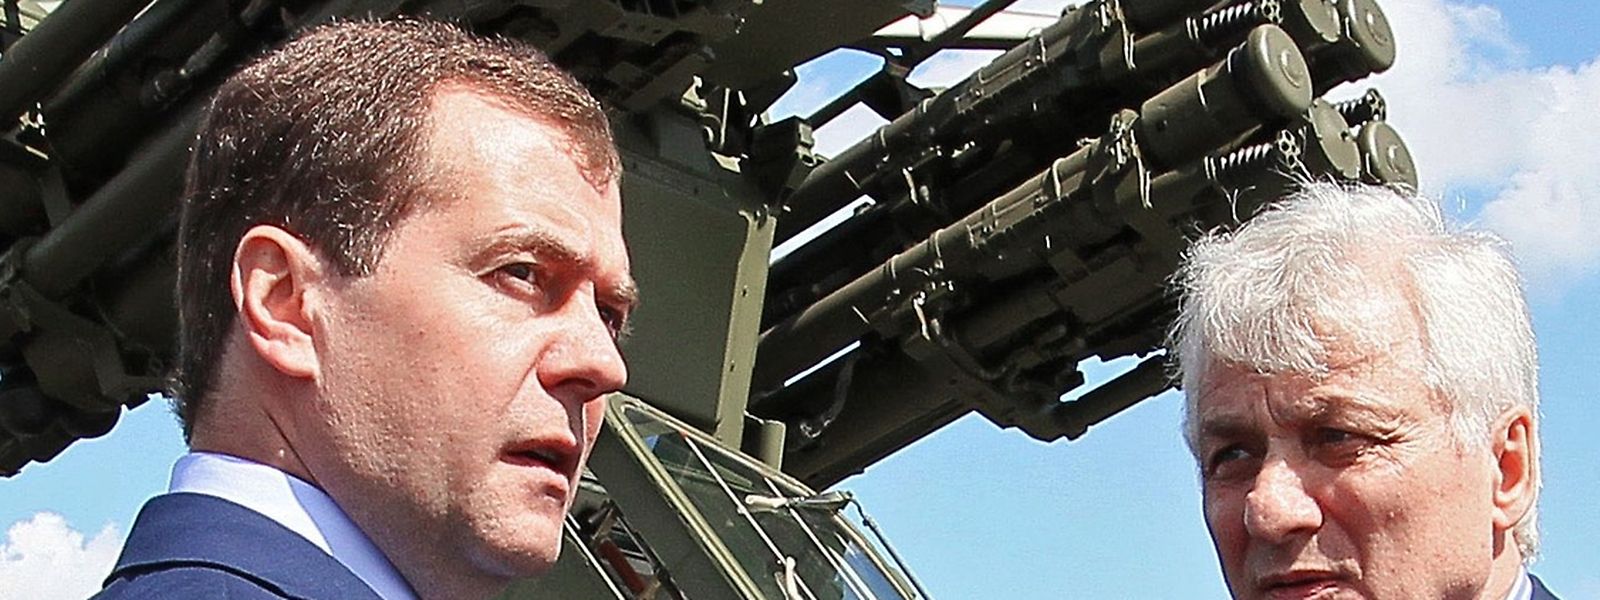 Der russische Ex-Präsident Medwedew (hier bei einer Waffeninspektion im Jahr 2012) fällt seit Beginn des Ukraine-Krieges immer wieder mit martialischen Drohgebärden auf.